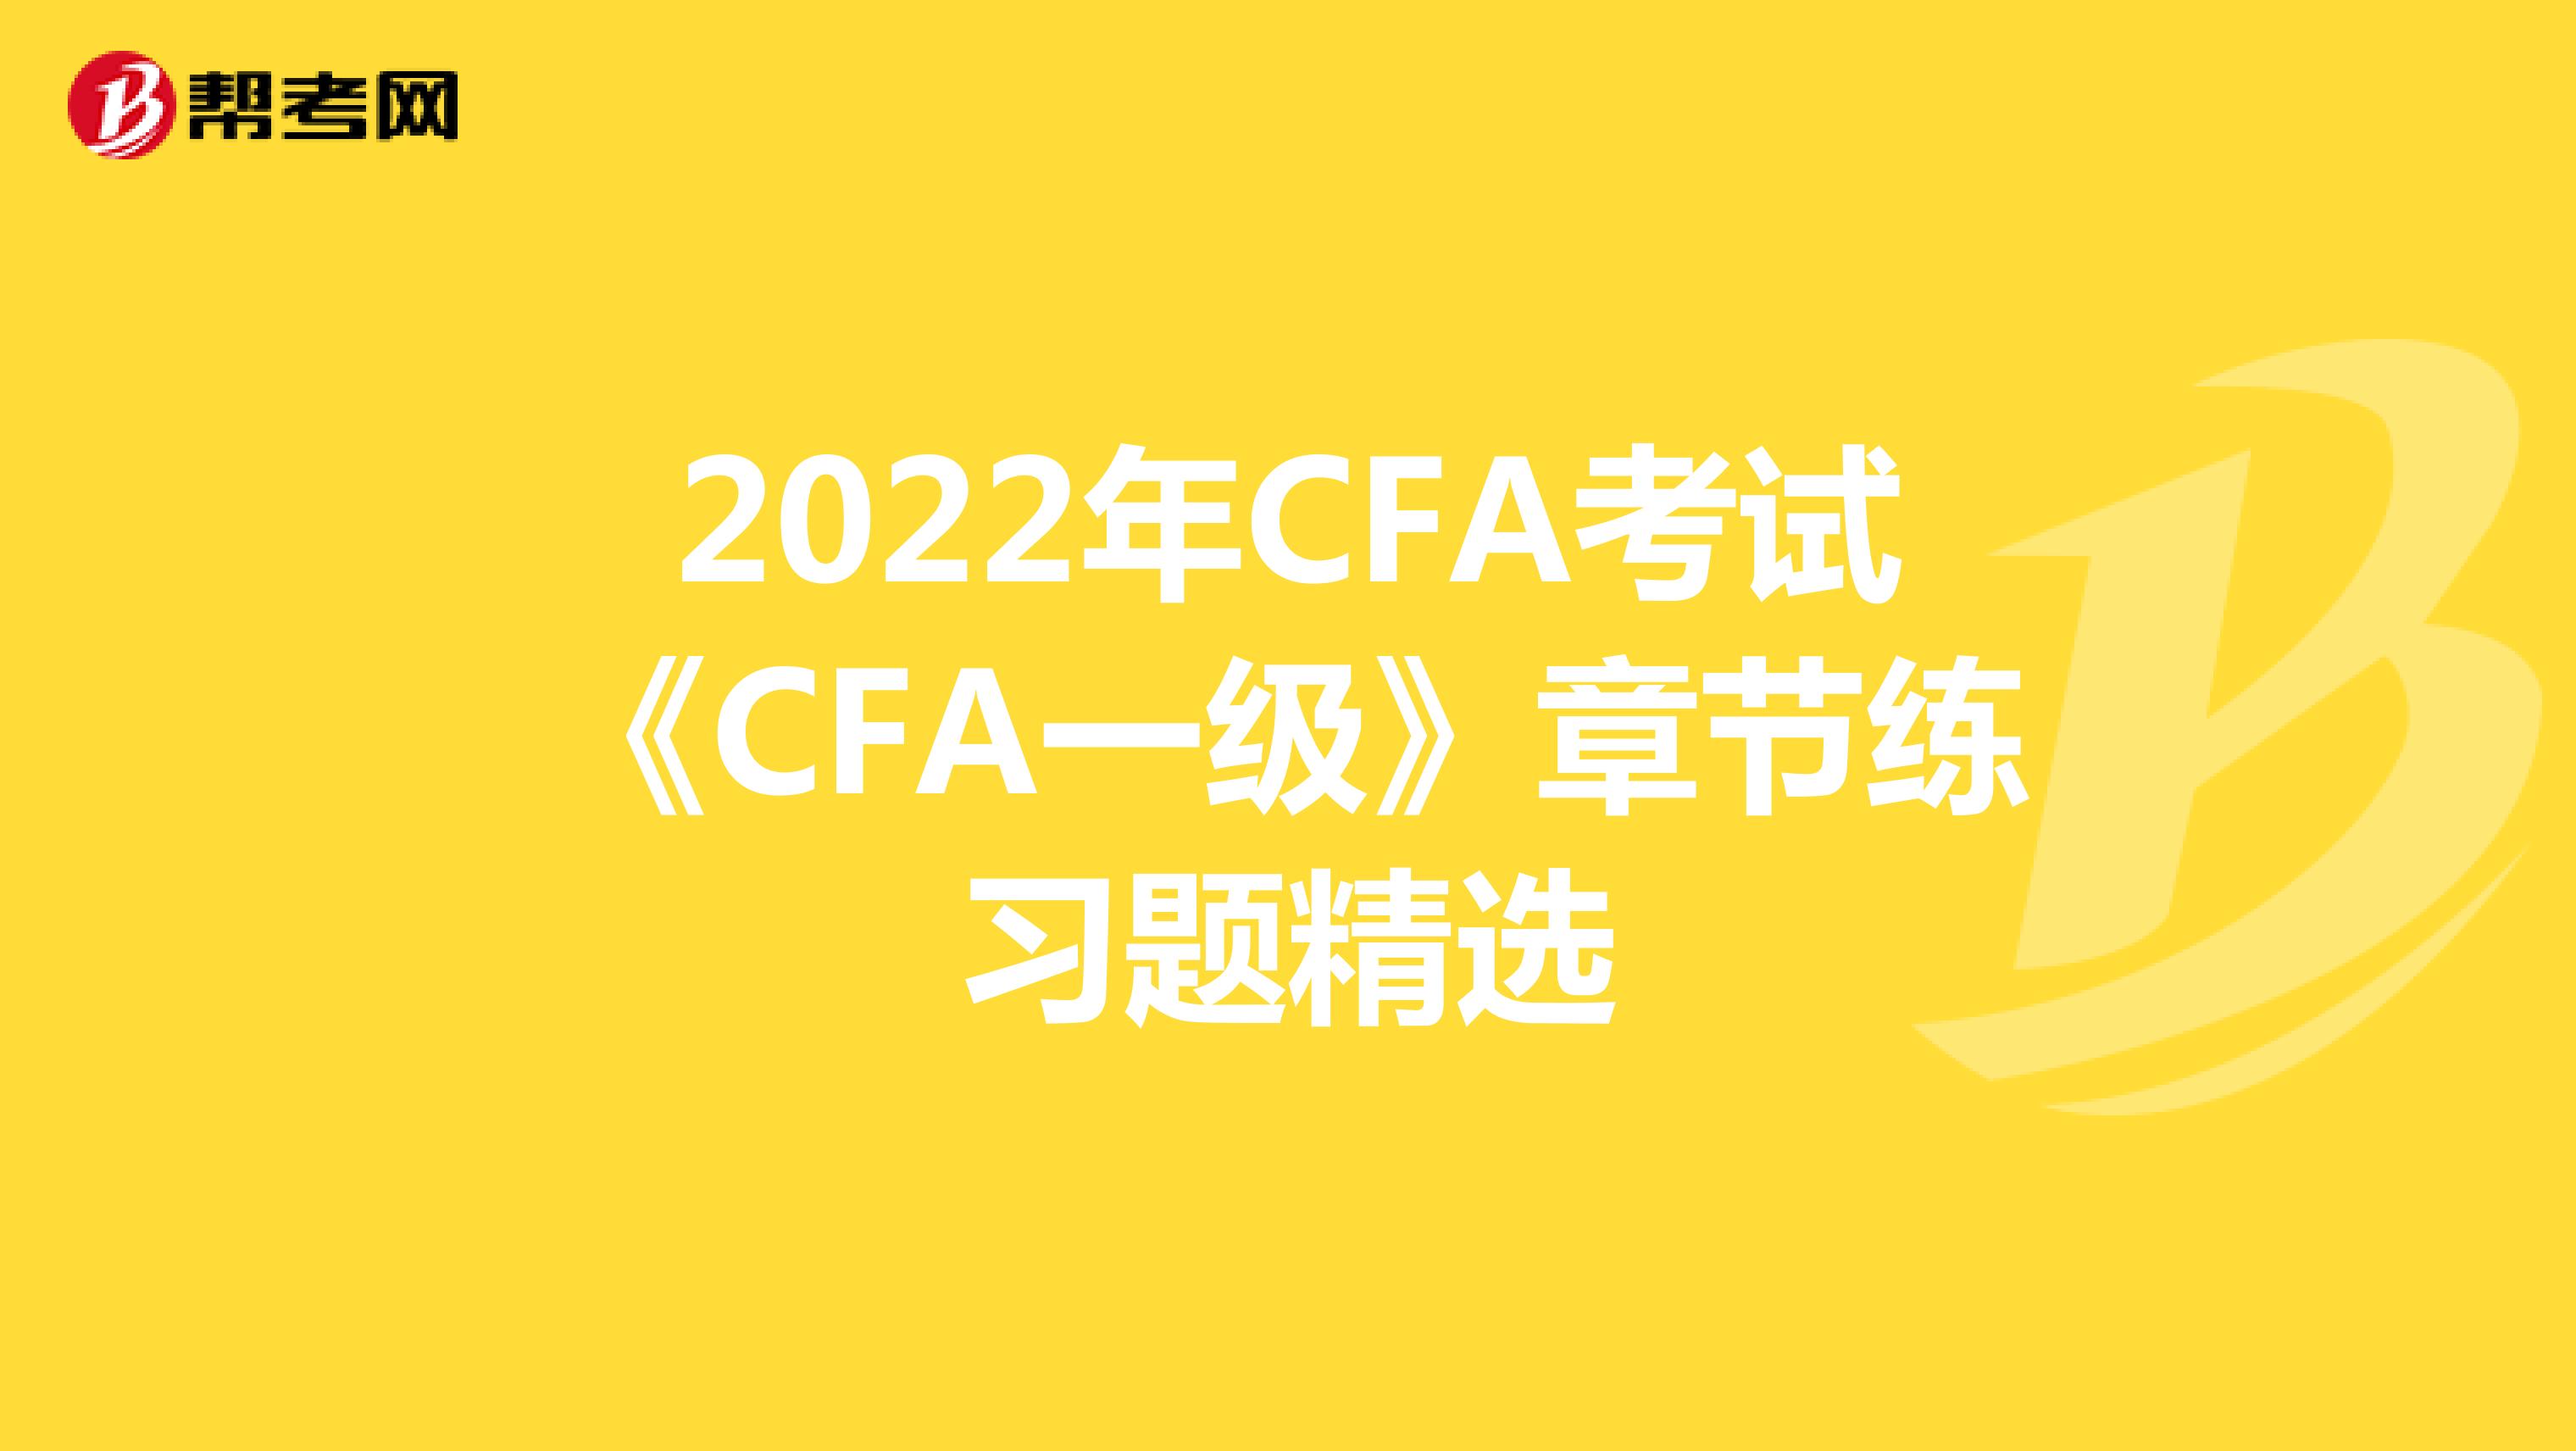 2022年CFA考试《CFA一级》章节练习题精选